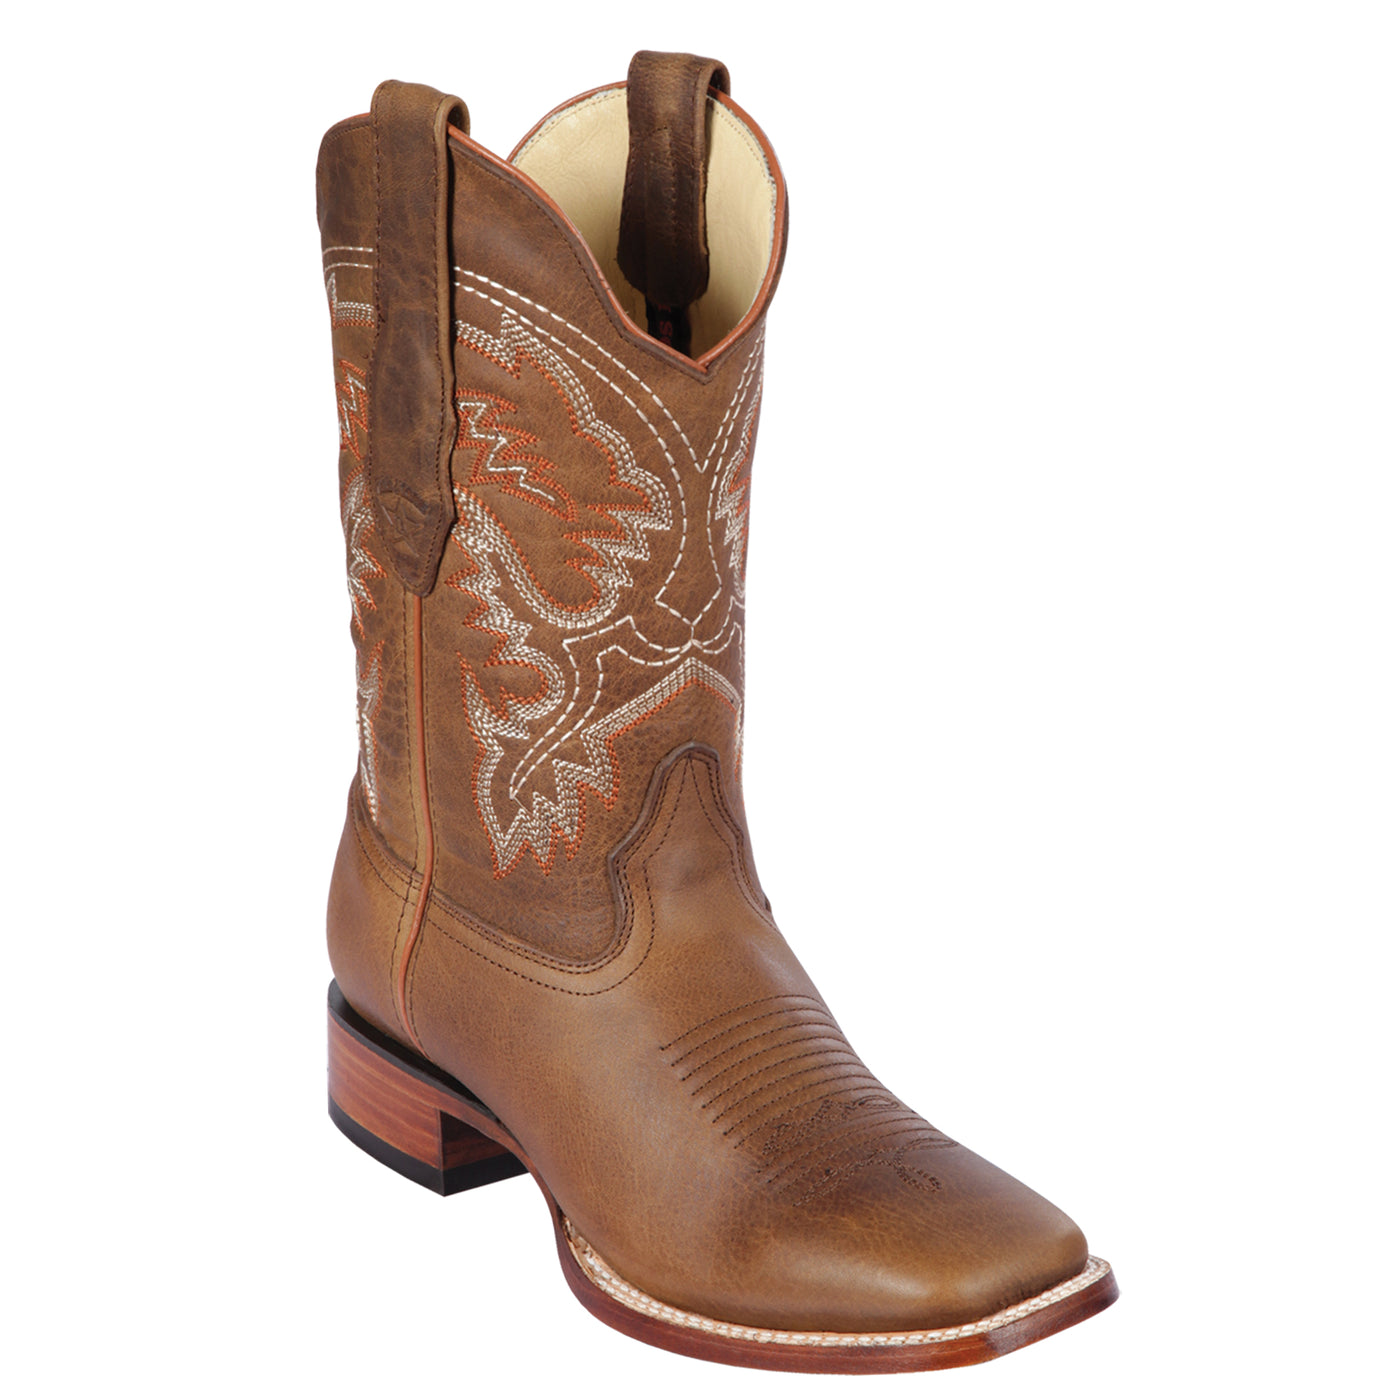 Los Altos Boots: Premium Western Boots | Shop Now!